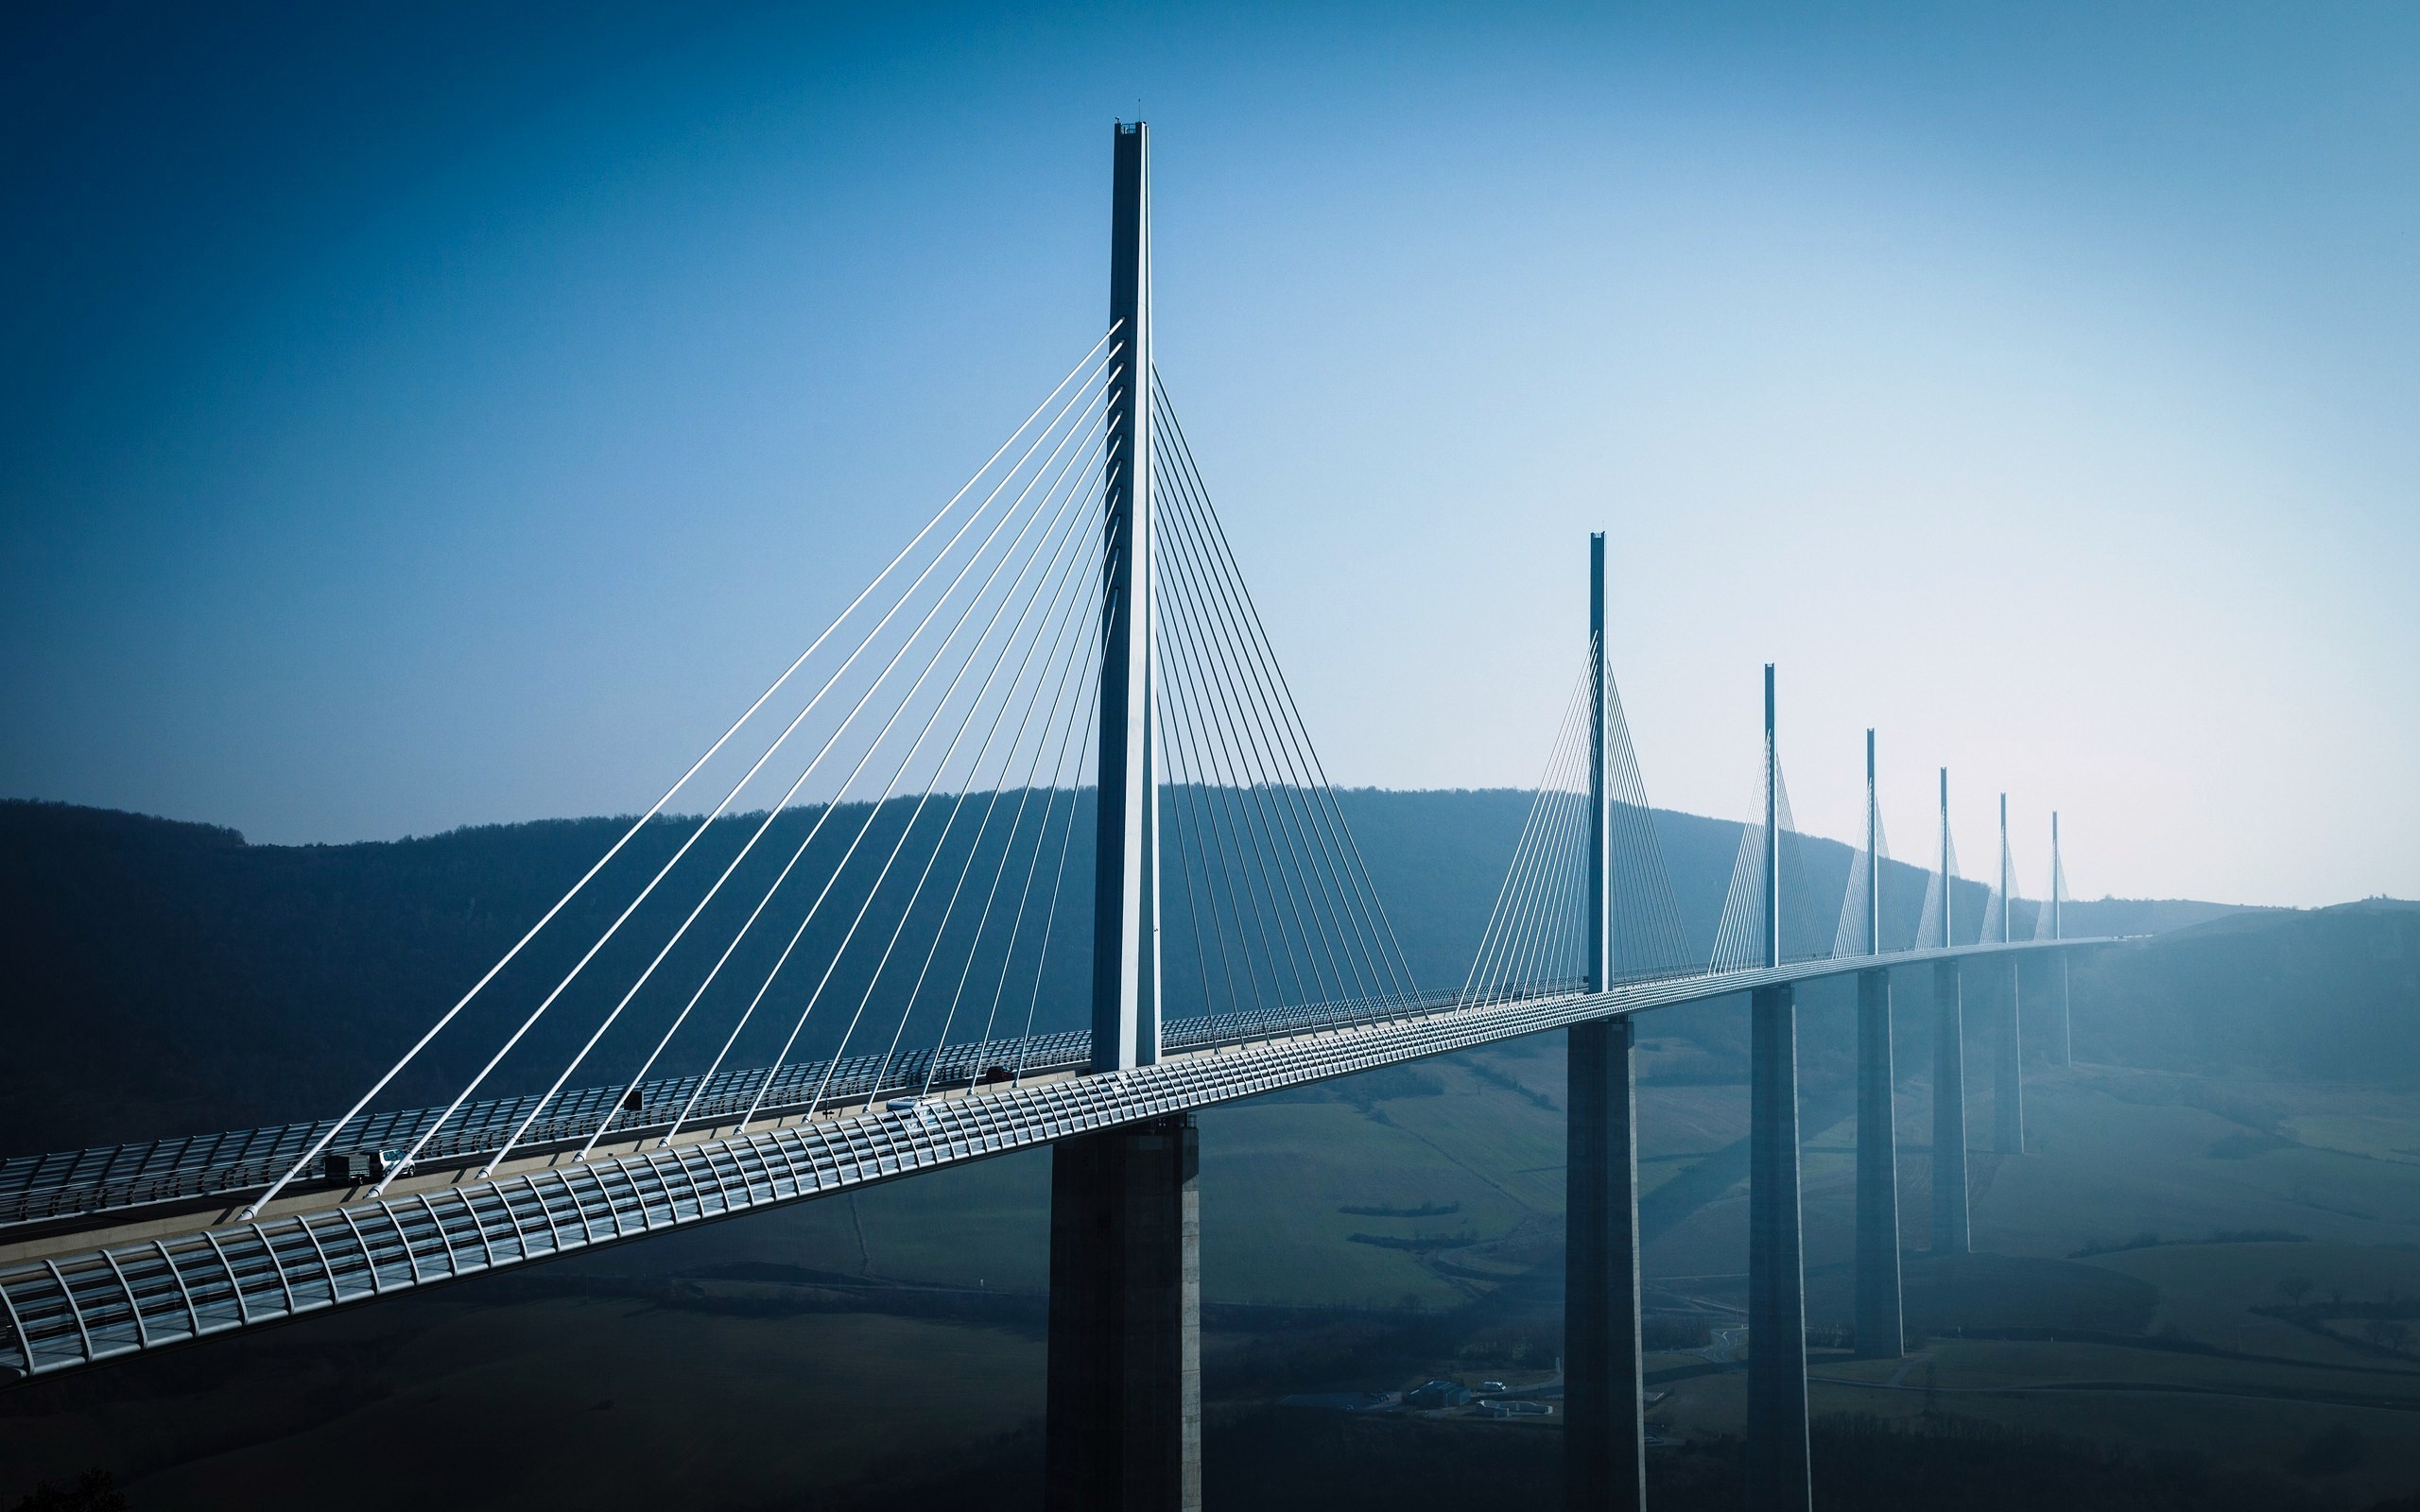 ingeniería civil citas fondos de pantalla,puente suspendido en cables,puente,enlace fijo,puente colgante,cielo